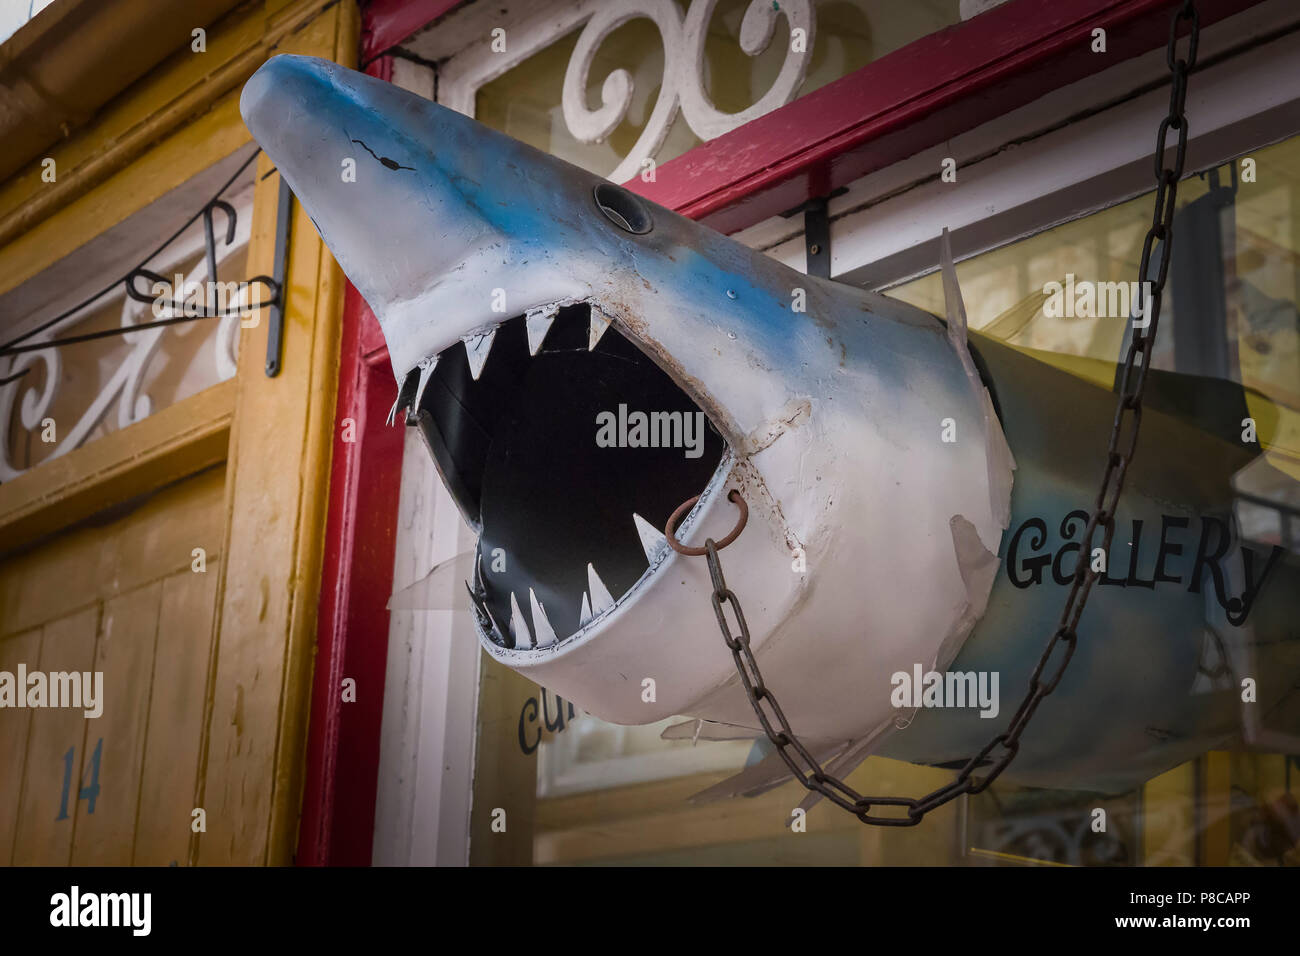 Weit geöffneten Mund eines Hais Kreatur außerhalb einer Galerie im alten Pannier Market in Bideford Devon England Großbritannien Stockfoto